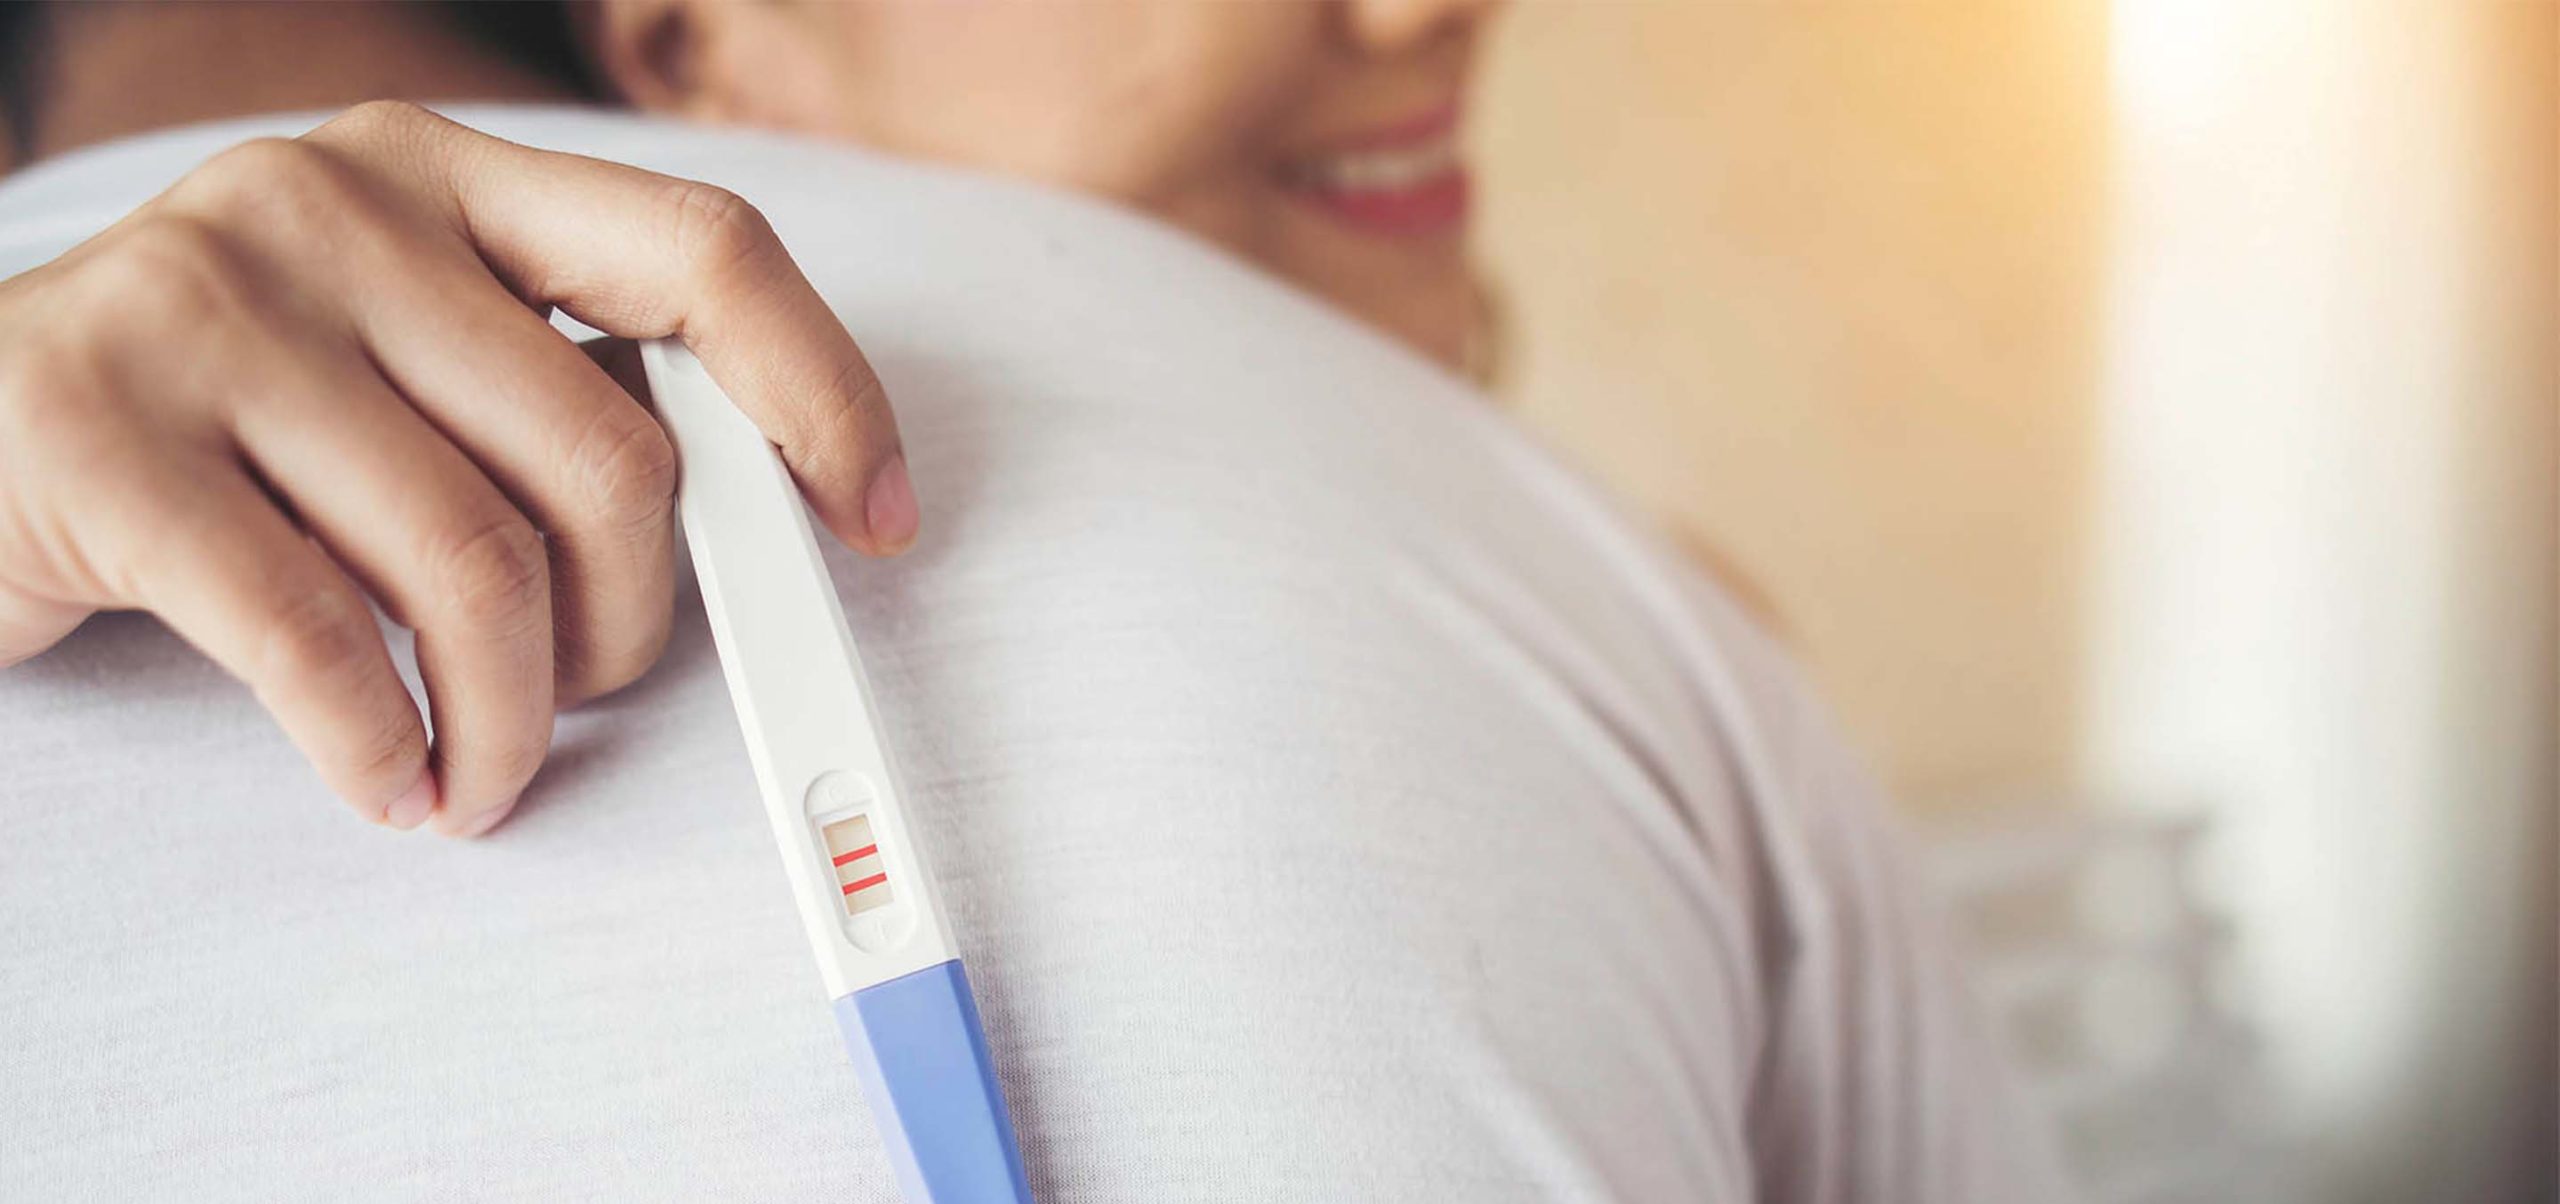 grávida mostra teste de gravidez com resultado positivo